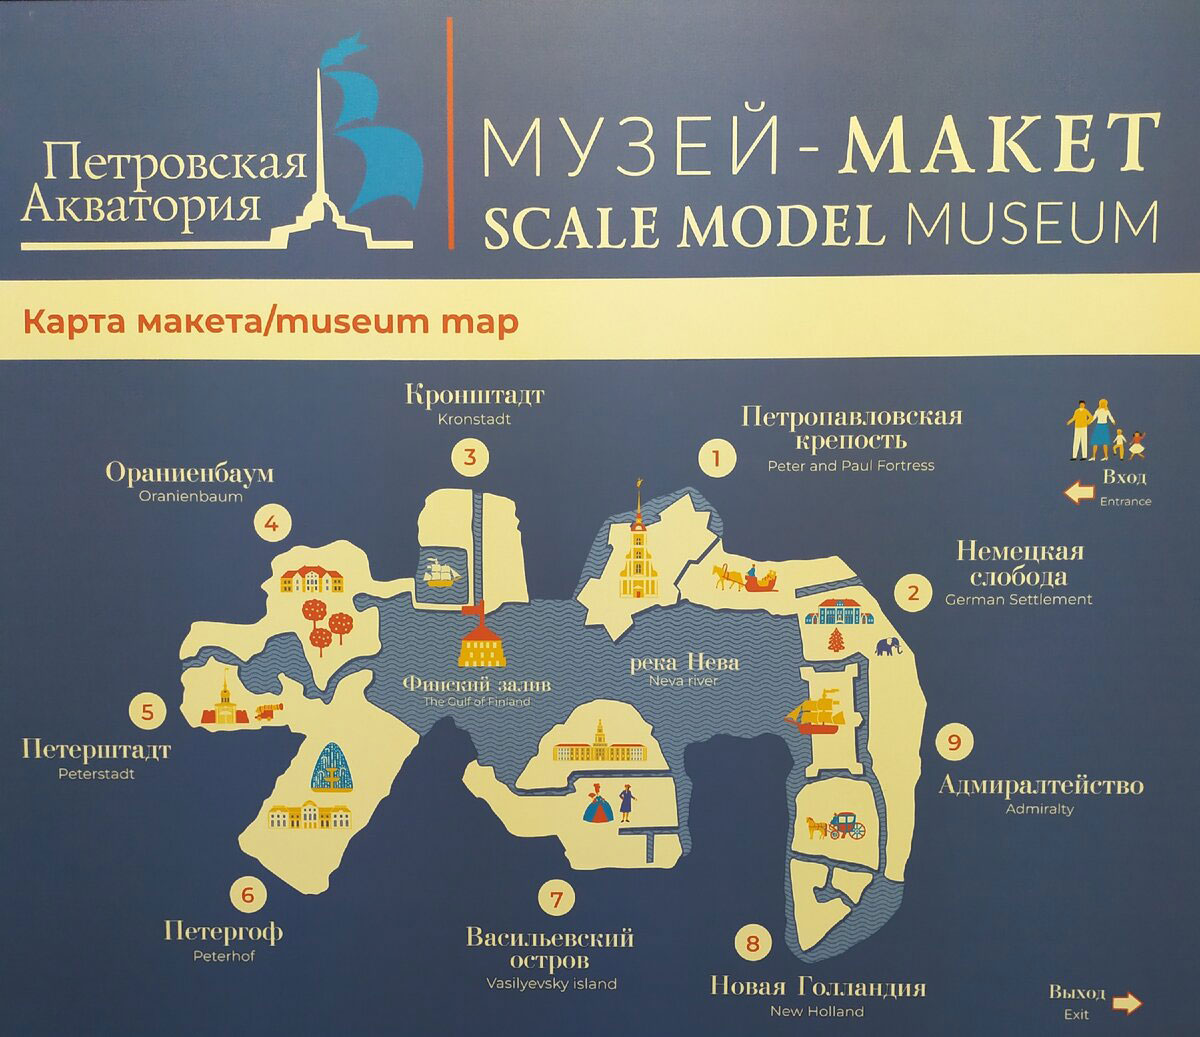 План-схема музей-макета «Петровская акватория» в Санкт-Петербурге